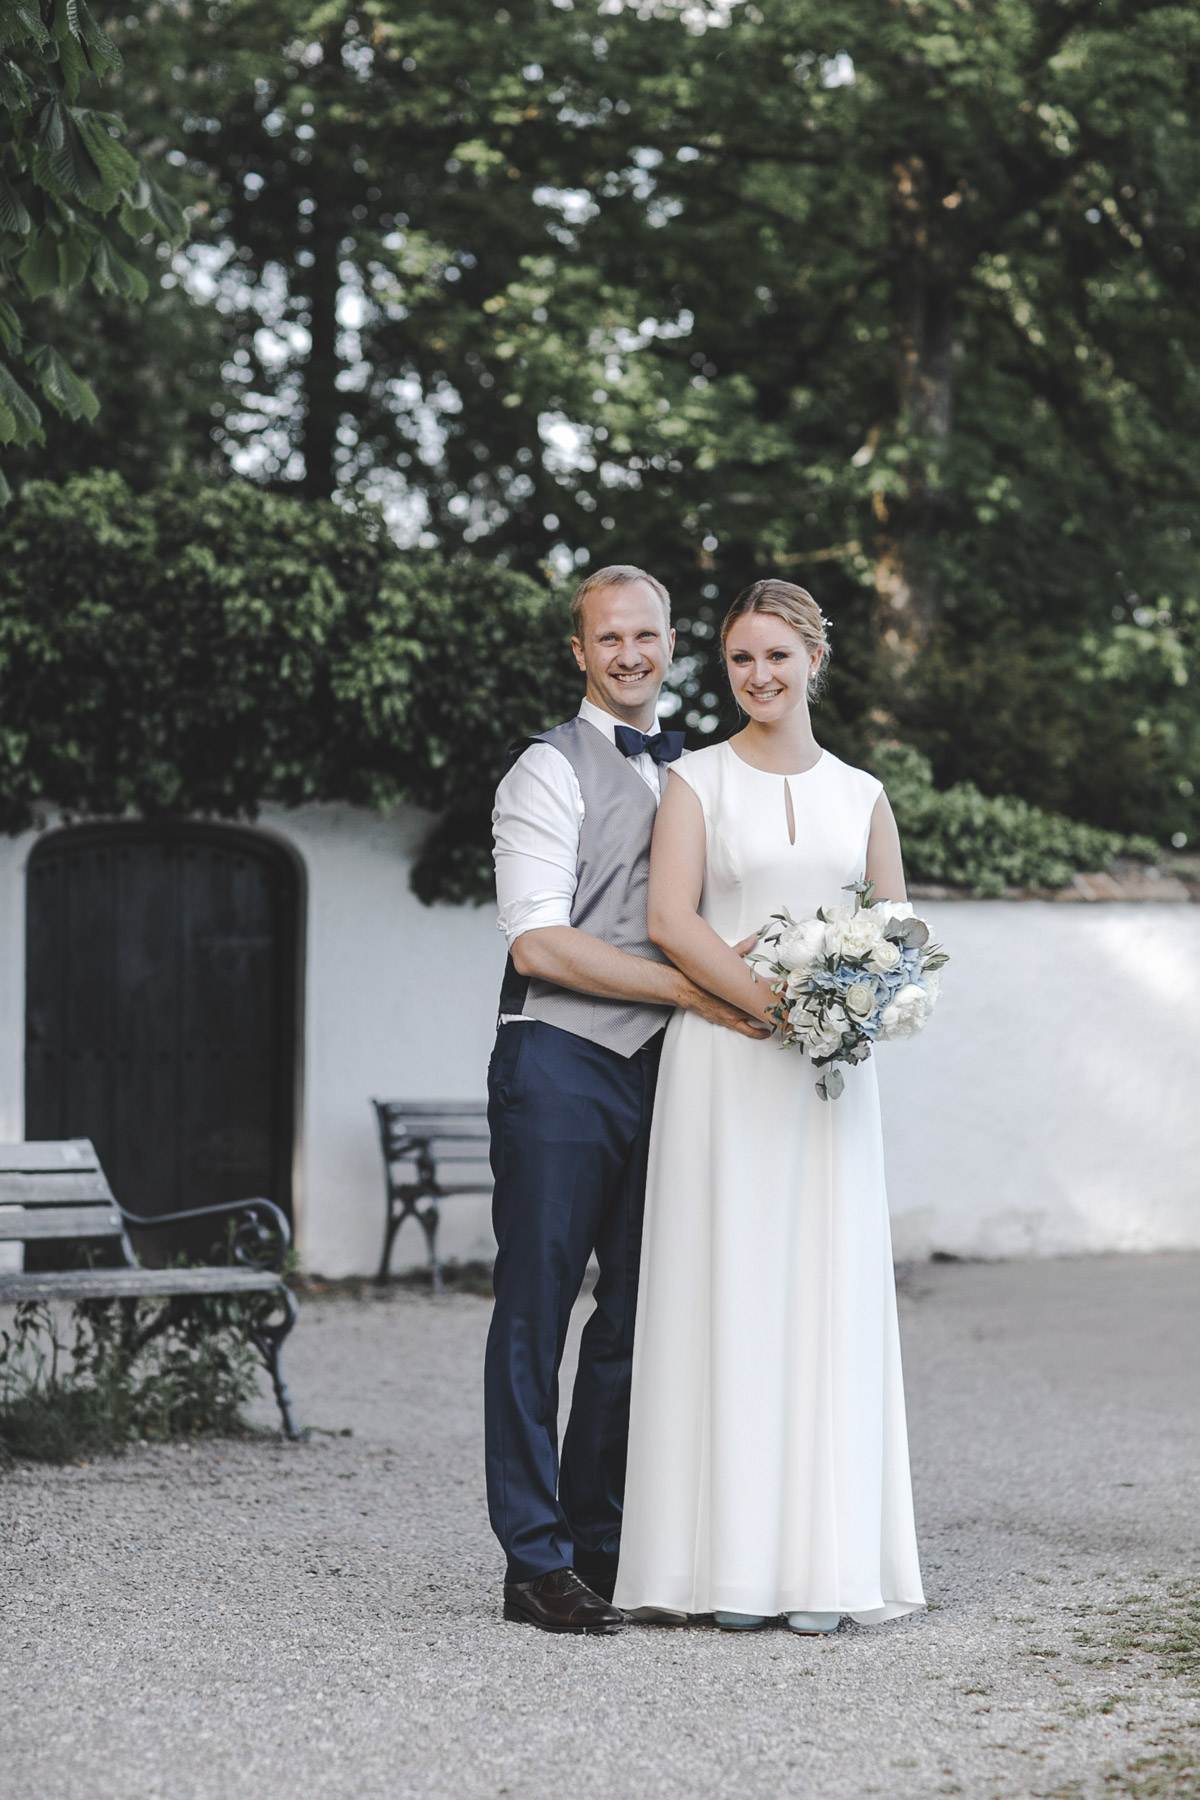 Barbara und Thorsten | Hochzeit am Starnenberger See - Fotografin Guelten Hamidanoglu Fotografie Koeln BT 19 759